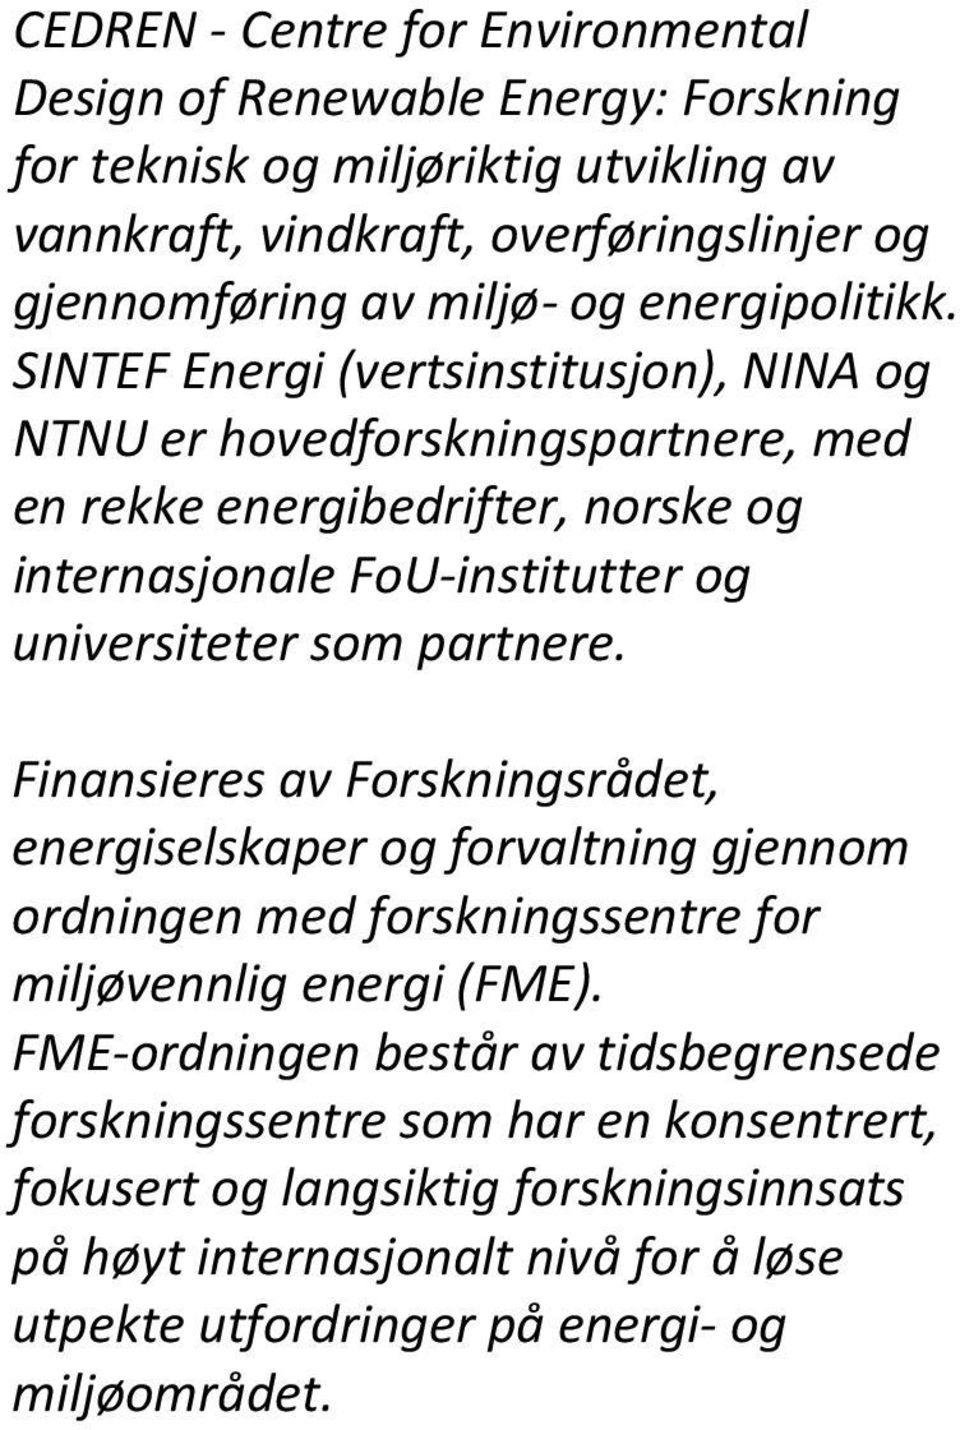 SINTEF Energi (vertsinstitusjon), NINA og NTNU er hovedforskningspartnere, med en rekke energibedrifter, norske og internasjonale FoU institutter og universiteter som partnere.